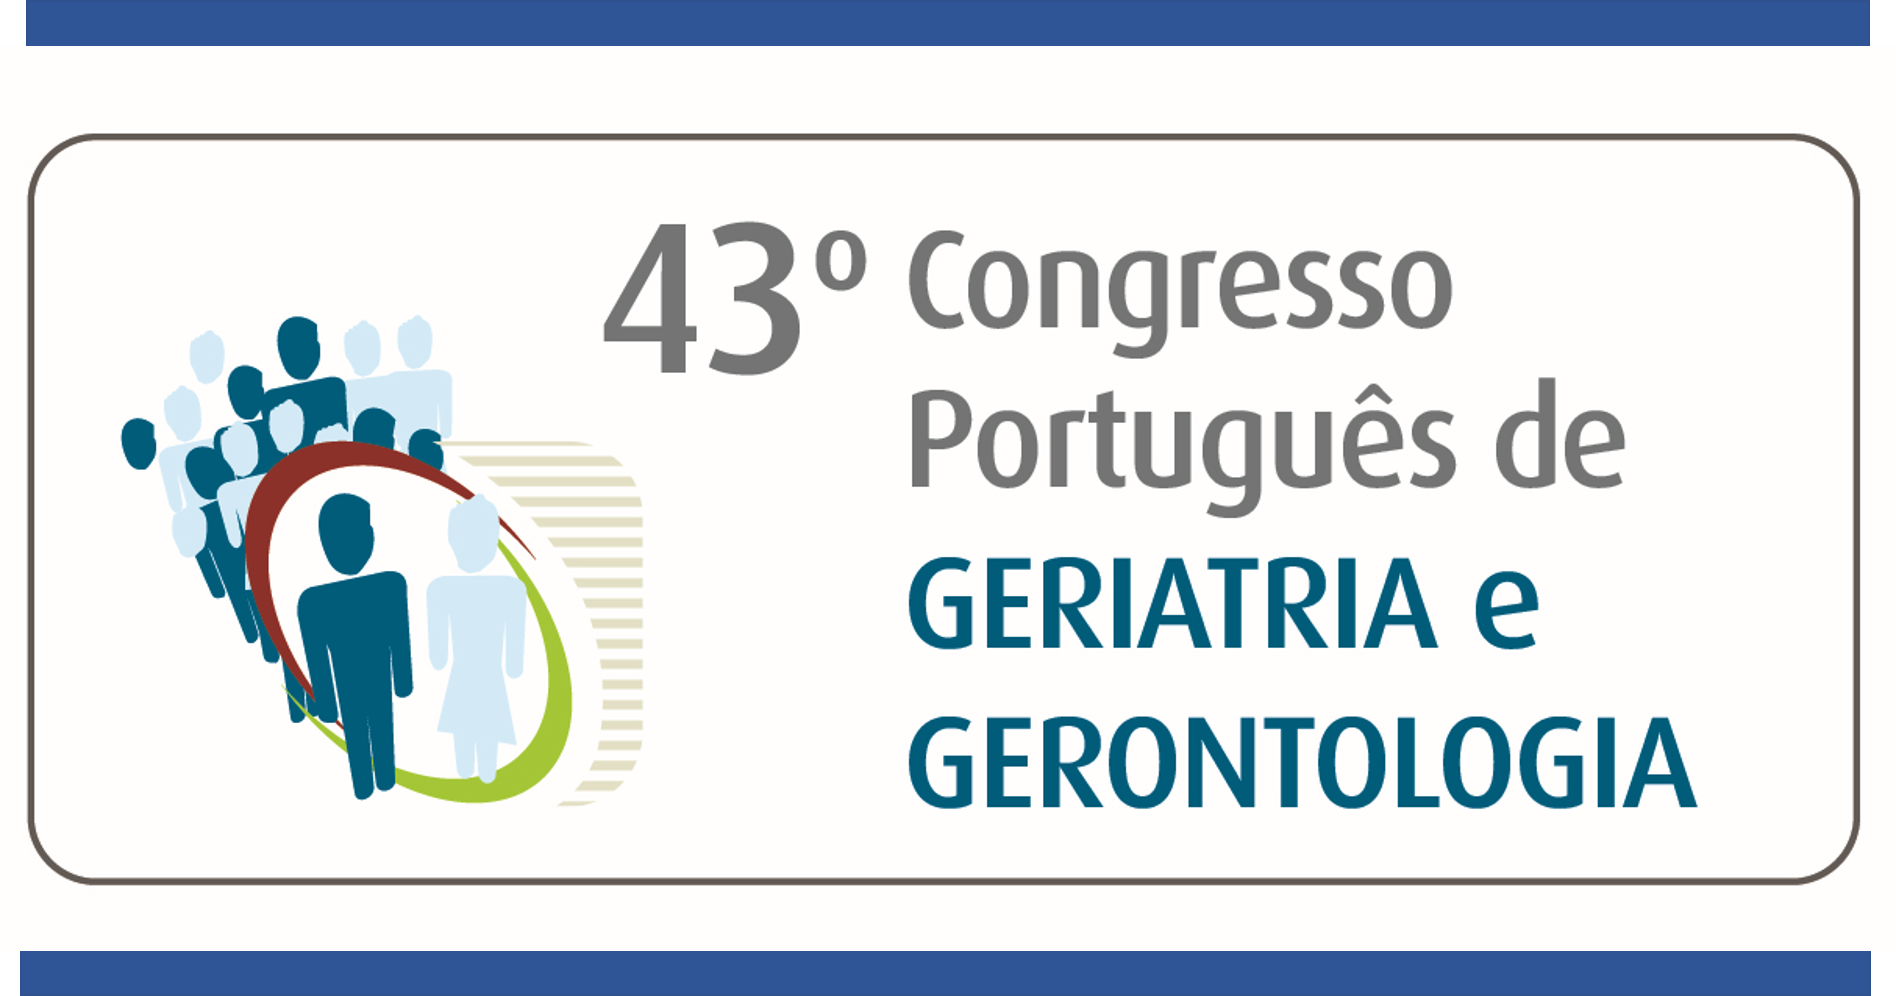 43.º Congresso Português de Geriatria e Gerontologia